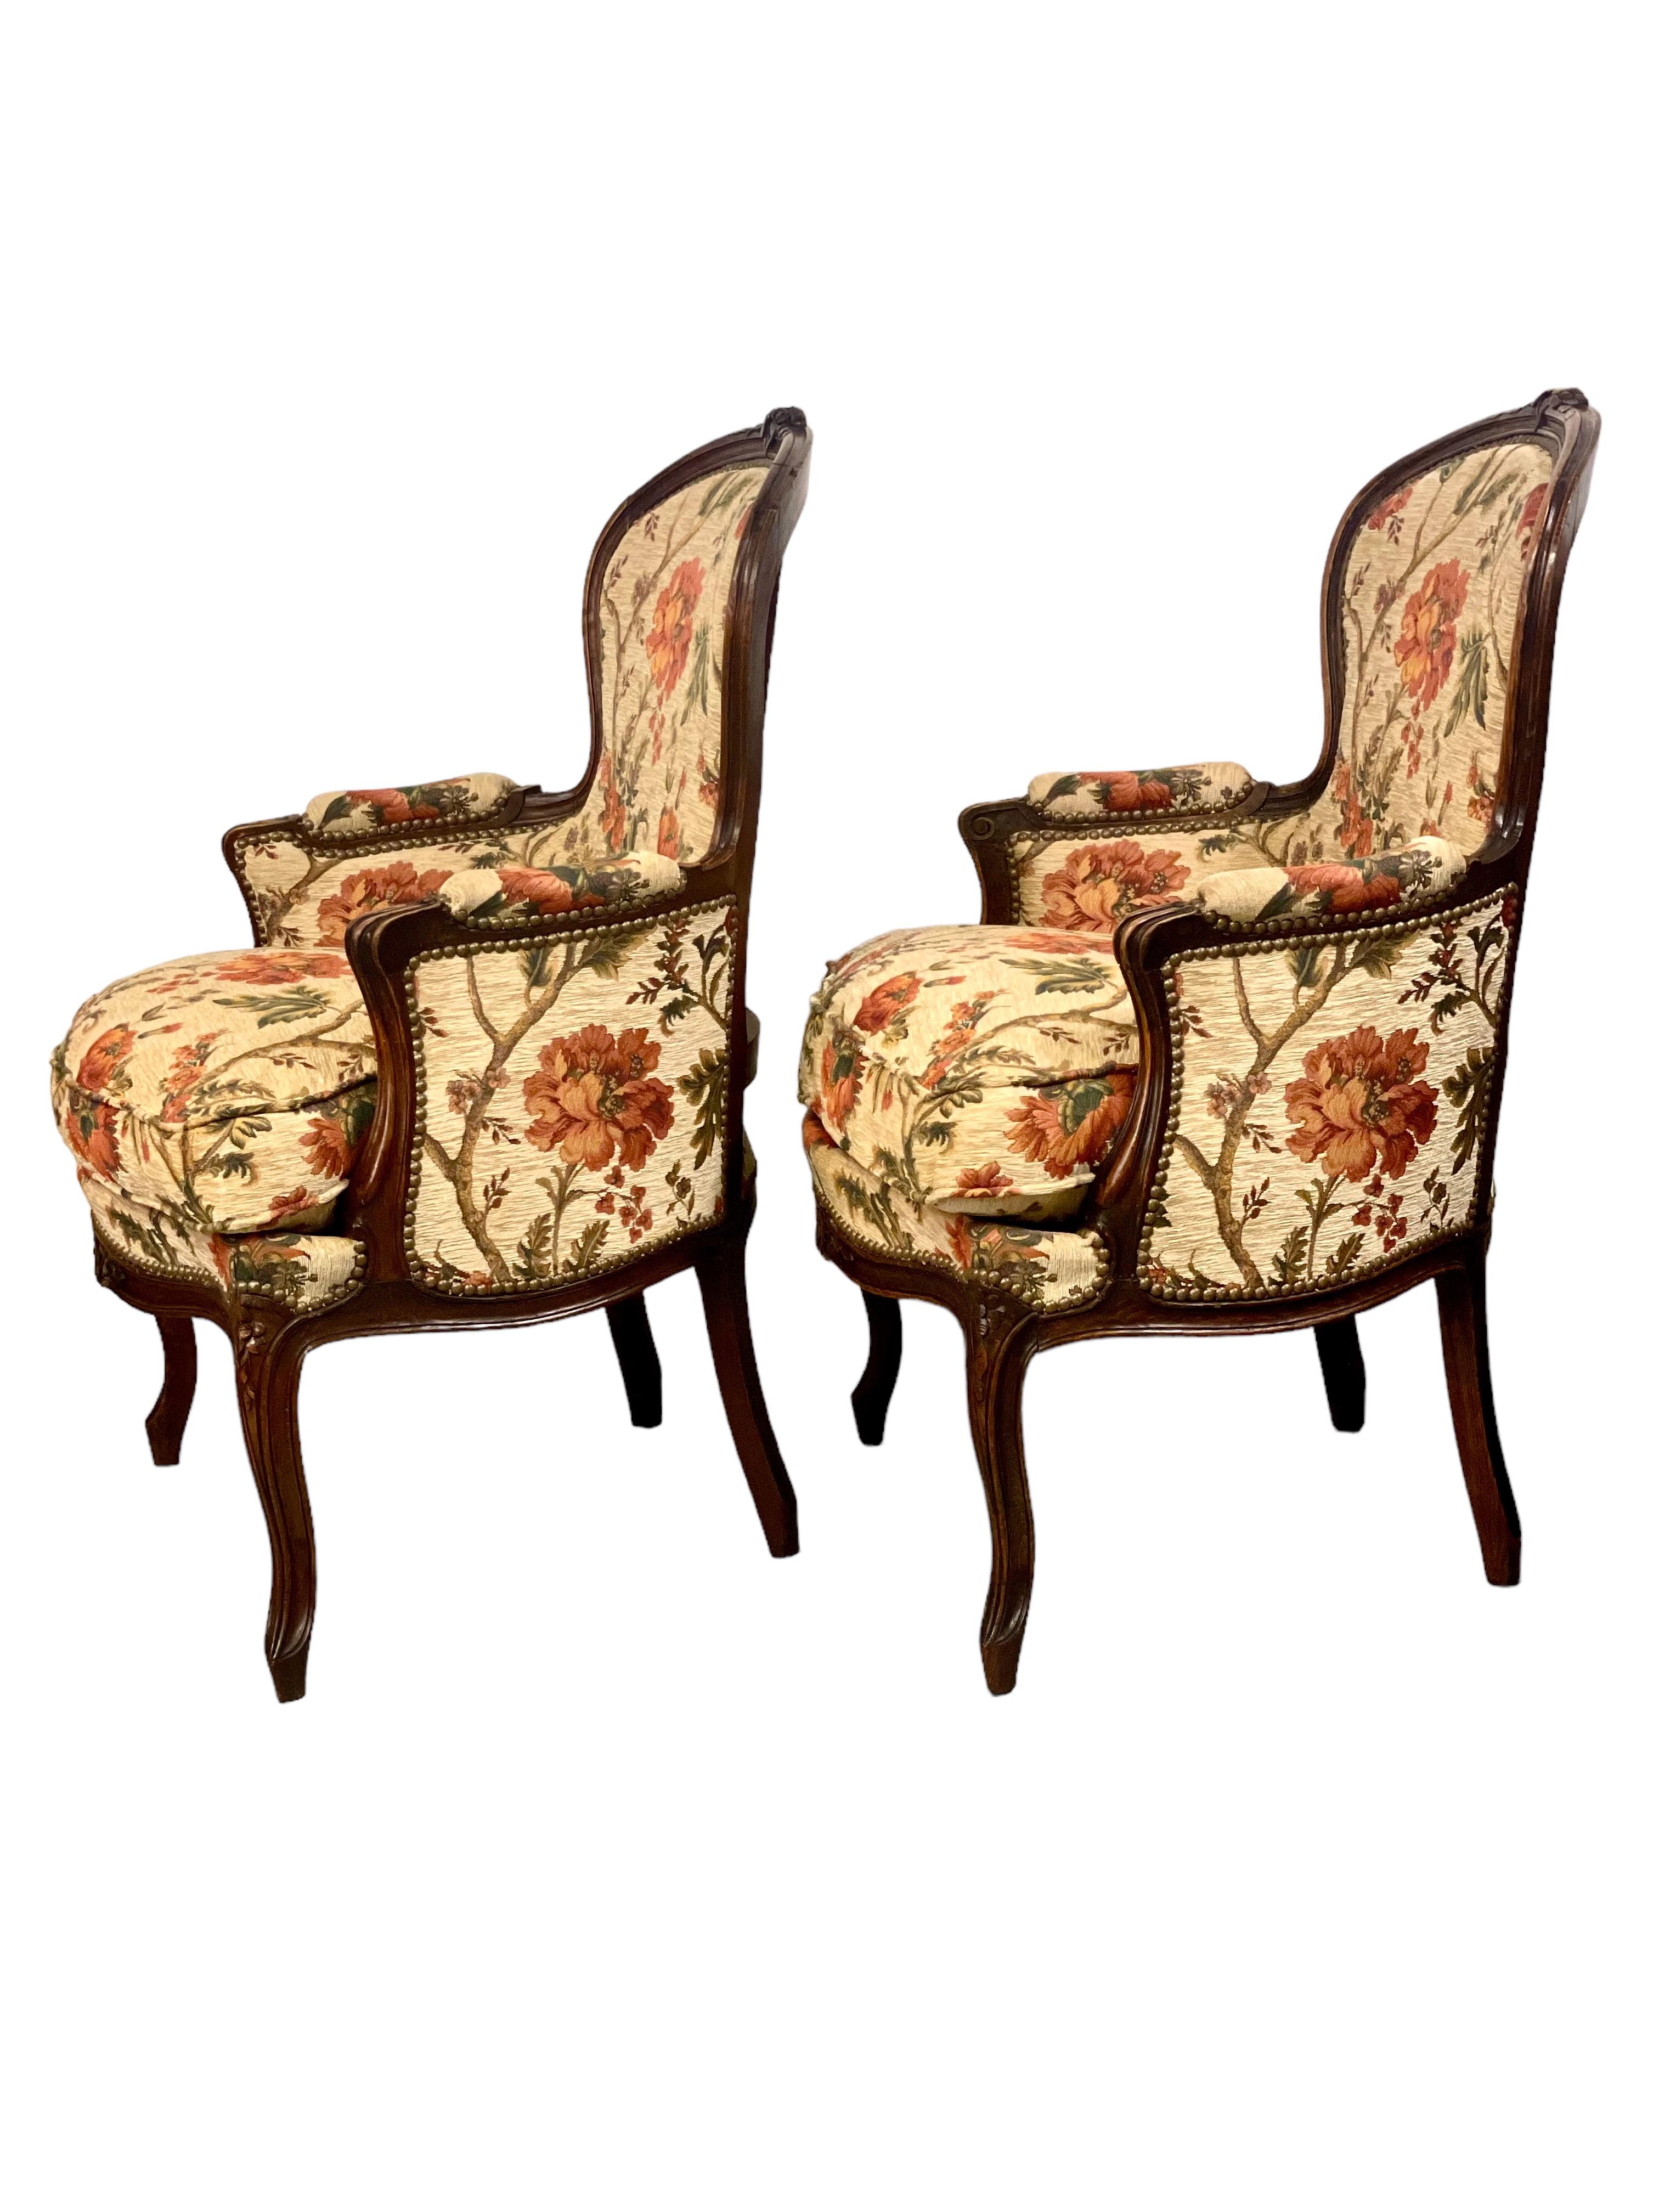 Paire de fauteuils 'Bergère' de style Louis XV, élégants et extrêmement confortables, tapissés d'un luxueux tissu floral dans des tons chauds d'abricot, de terracotta et de vert sur un fond crème. 
Les cadres en bois incurvés sont magnifiquement